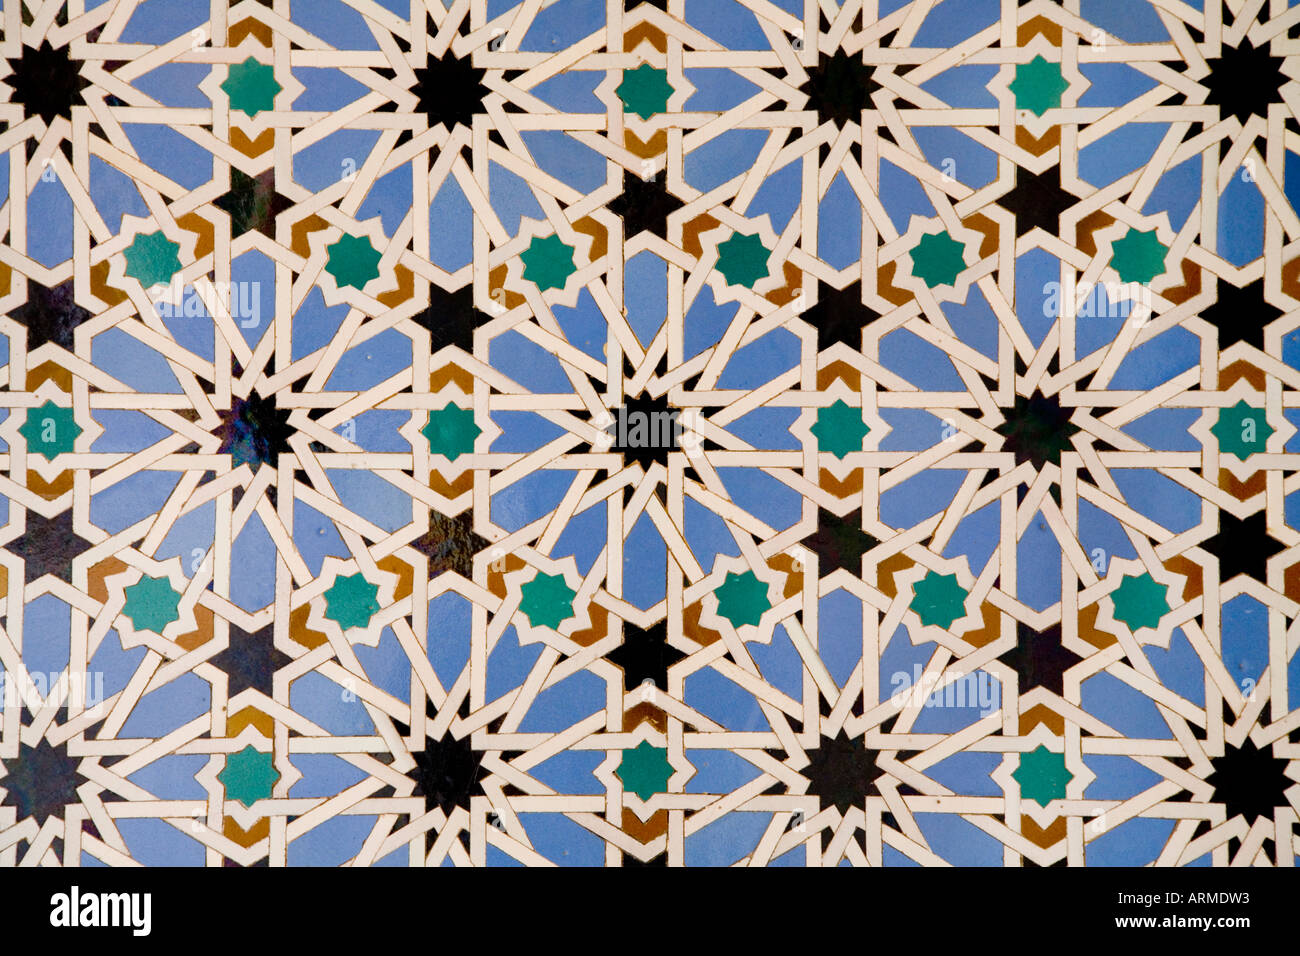 Séville Espagne Alcazar de motifs géométriques sur les carreaux en céramique typique de l'art arabe Banque D'Images